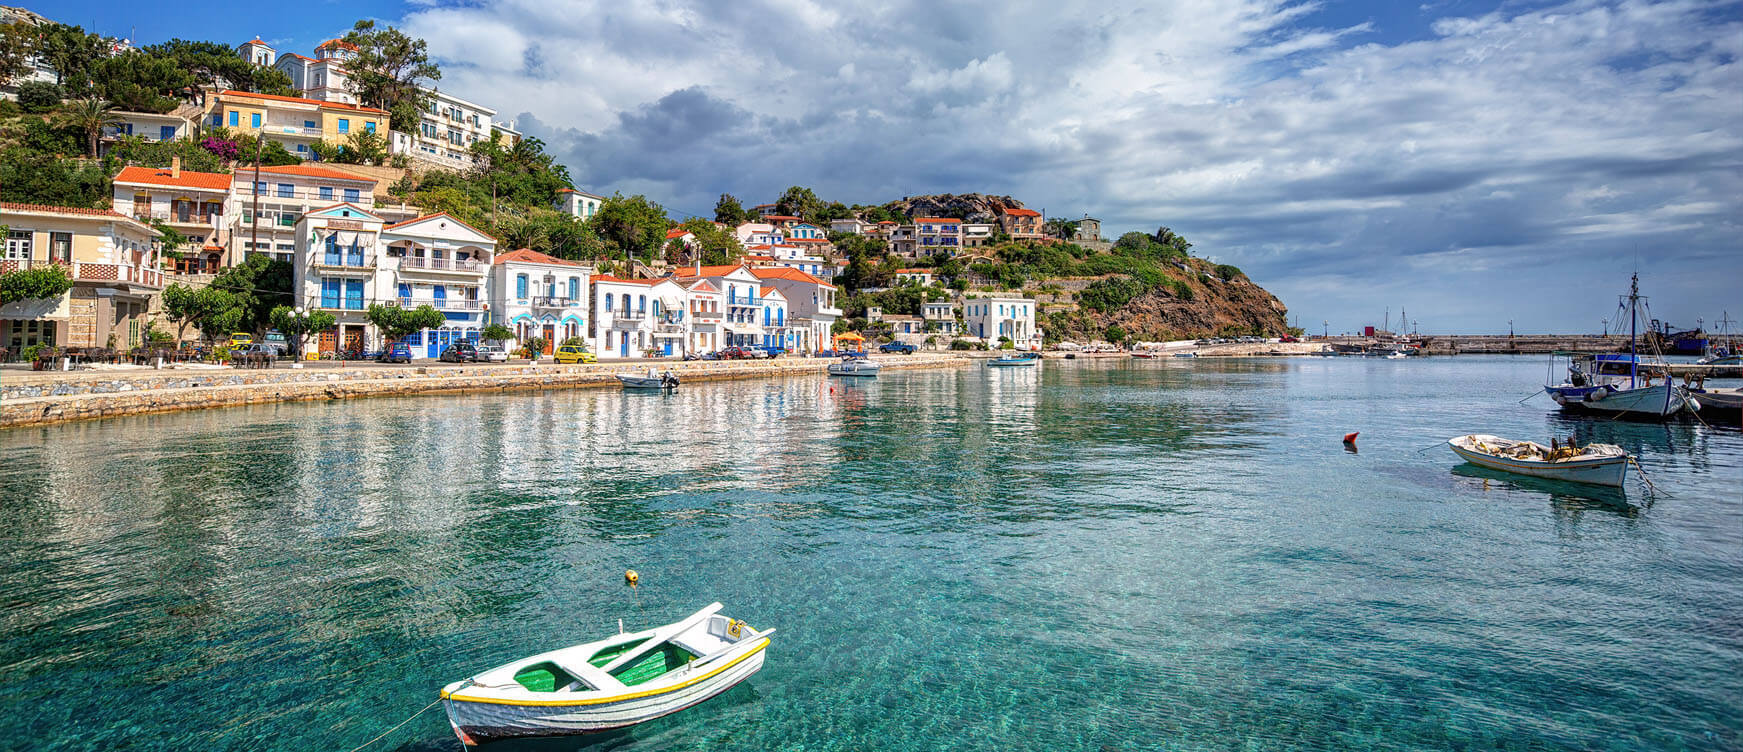 Δεν φαντάζεσαι - Έτσι πήραν το όνομά τους 10 δημοφιλή ελληνικά νησιά